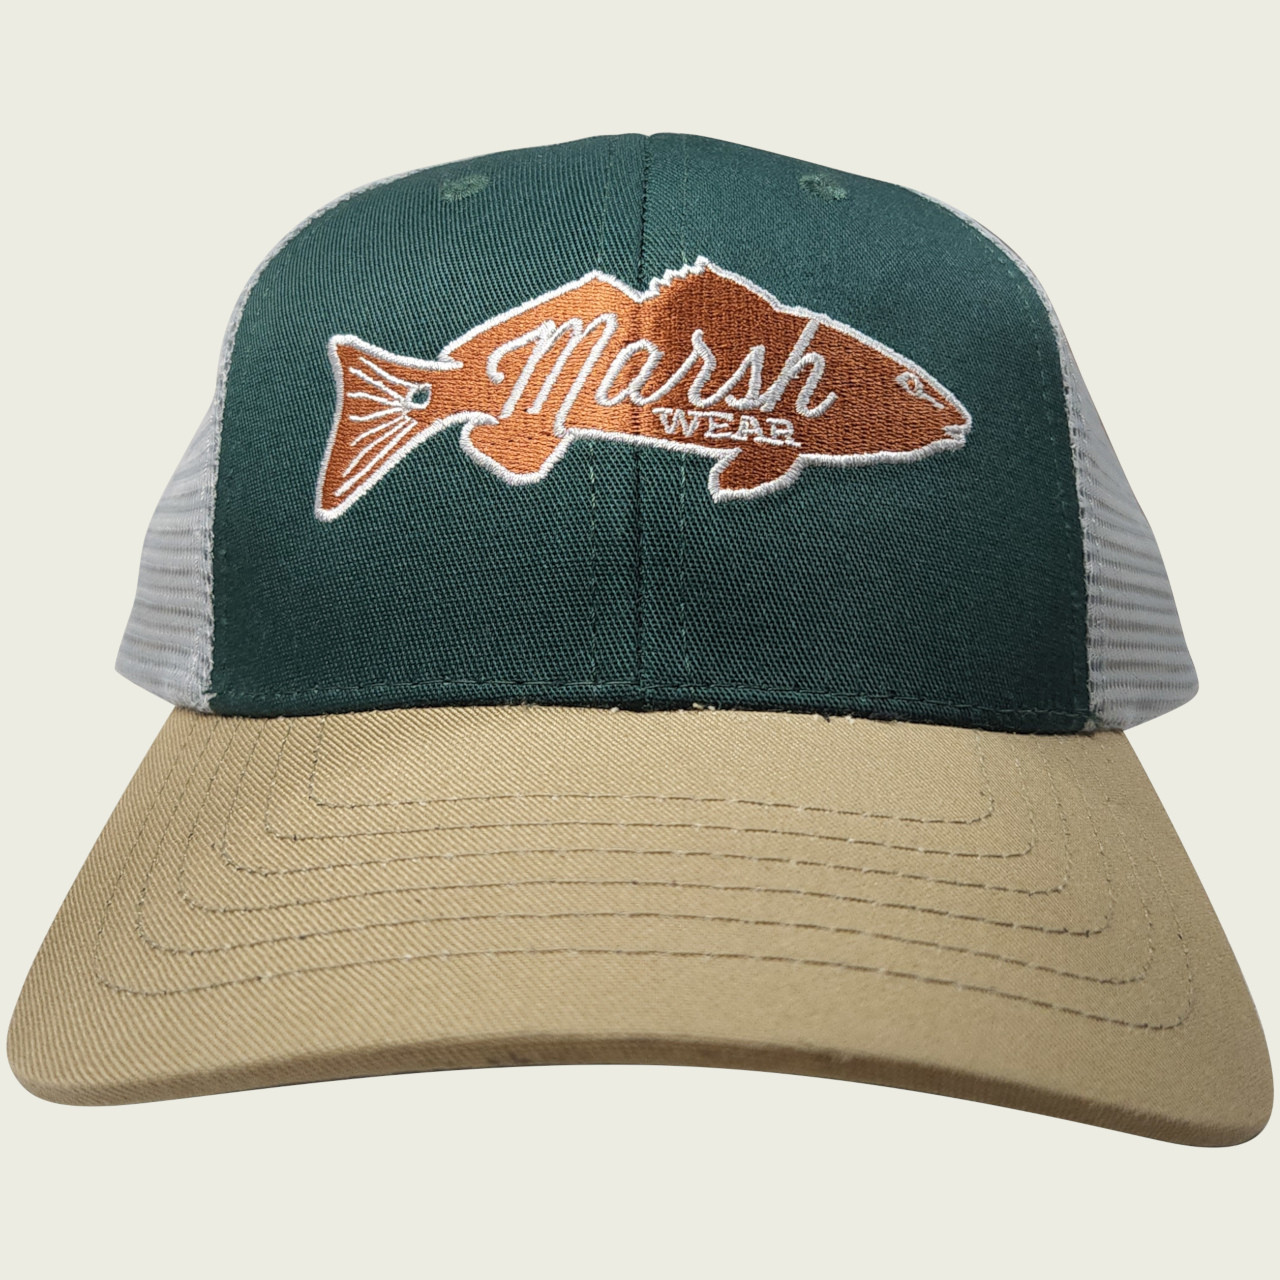 Marsh Wear MWC1001 Retro Redfish Trucker Hat